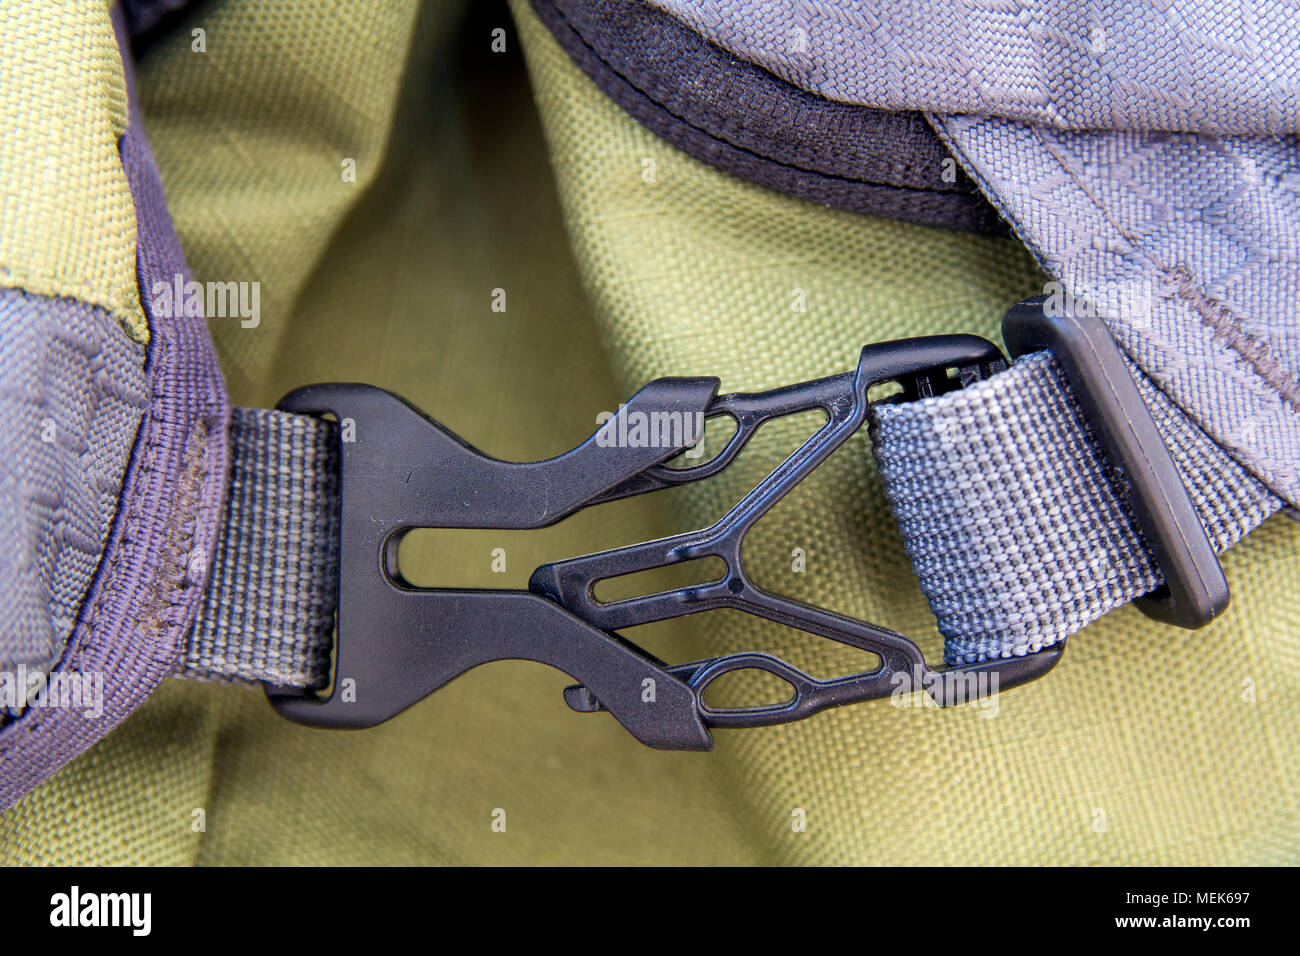 Detalle de cierre gris cómodo y seguro, broche plástico amarillo mochila. Seguridad, comodidad fiabilidad de modernos accesorios para backp de stock - Alamy